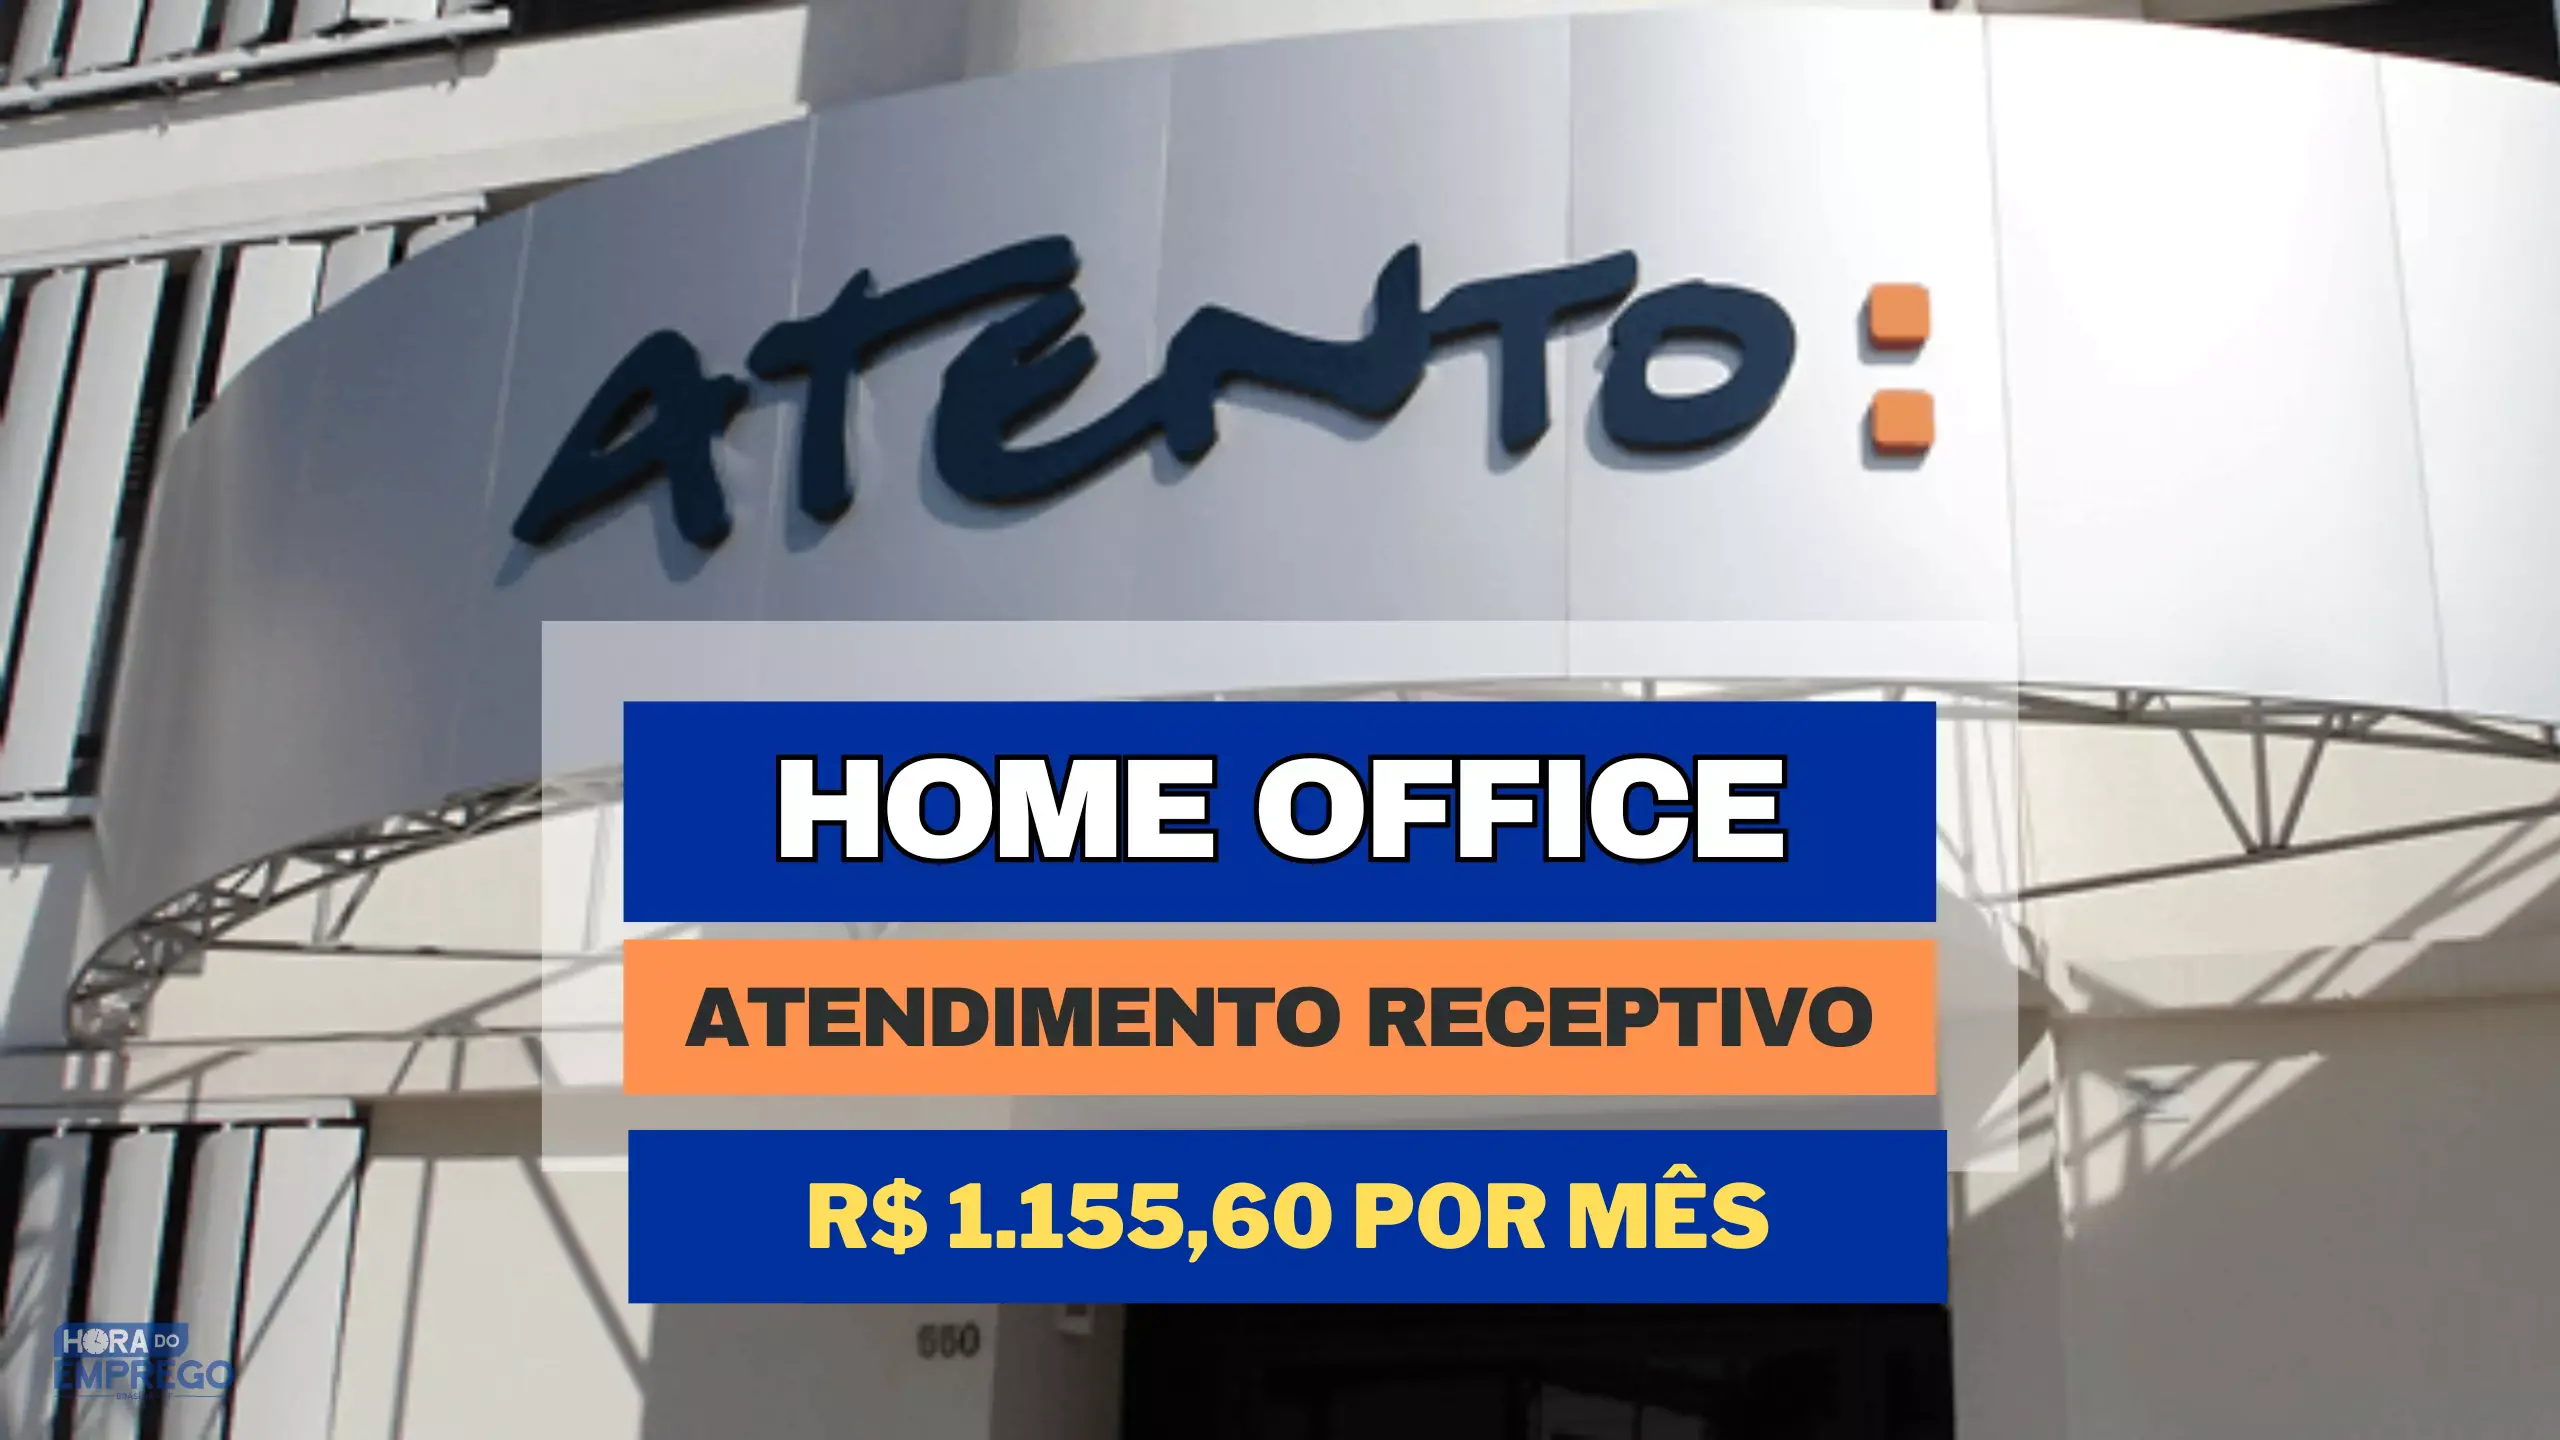 Atento Brasil abriu vagas HOME OFFICE para Atendimento Receptivo com Salário de R$ 1.155,60 por mês